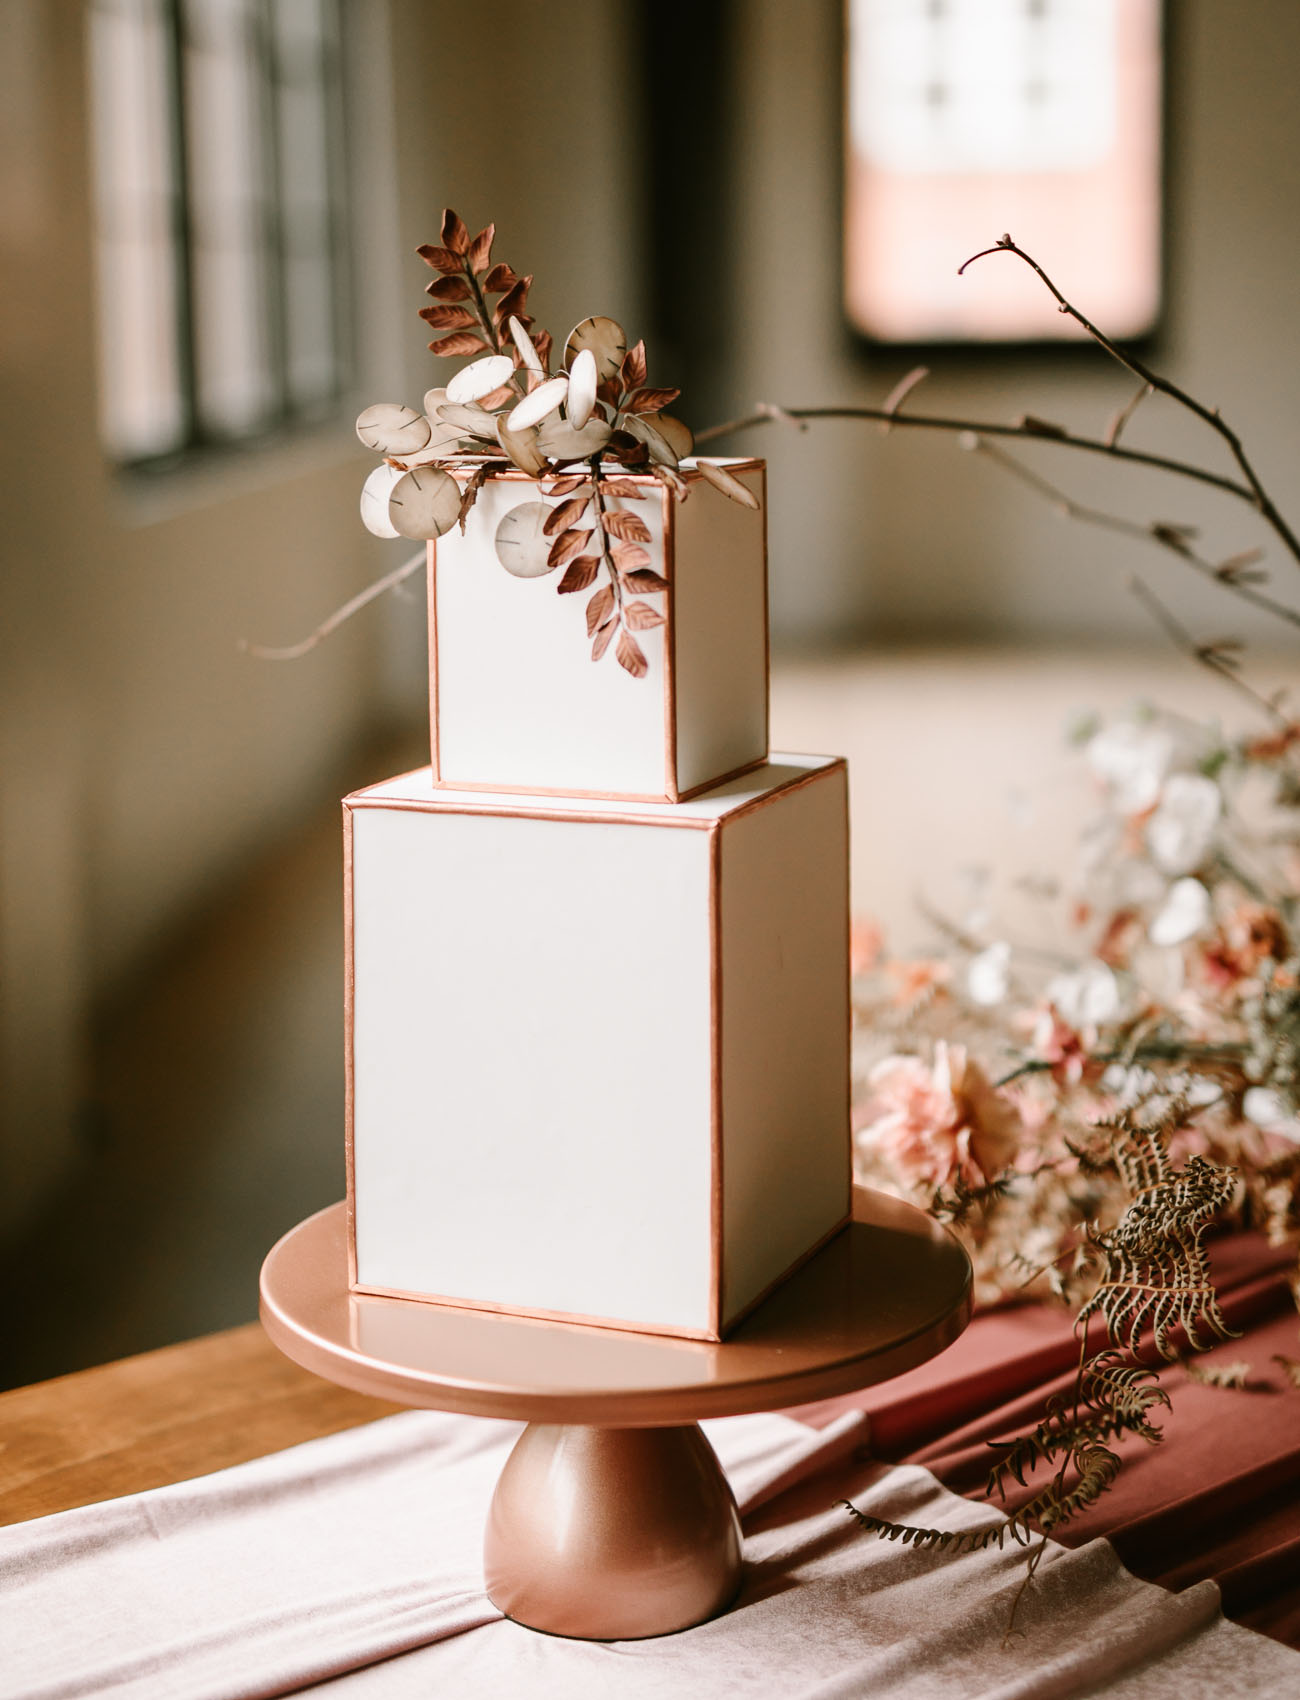 Inspiração para bolos de casamento quadrados | Créditos: Tiarra Sorte Photography